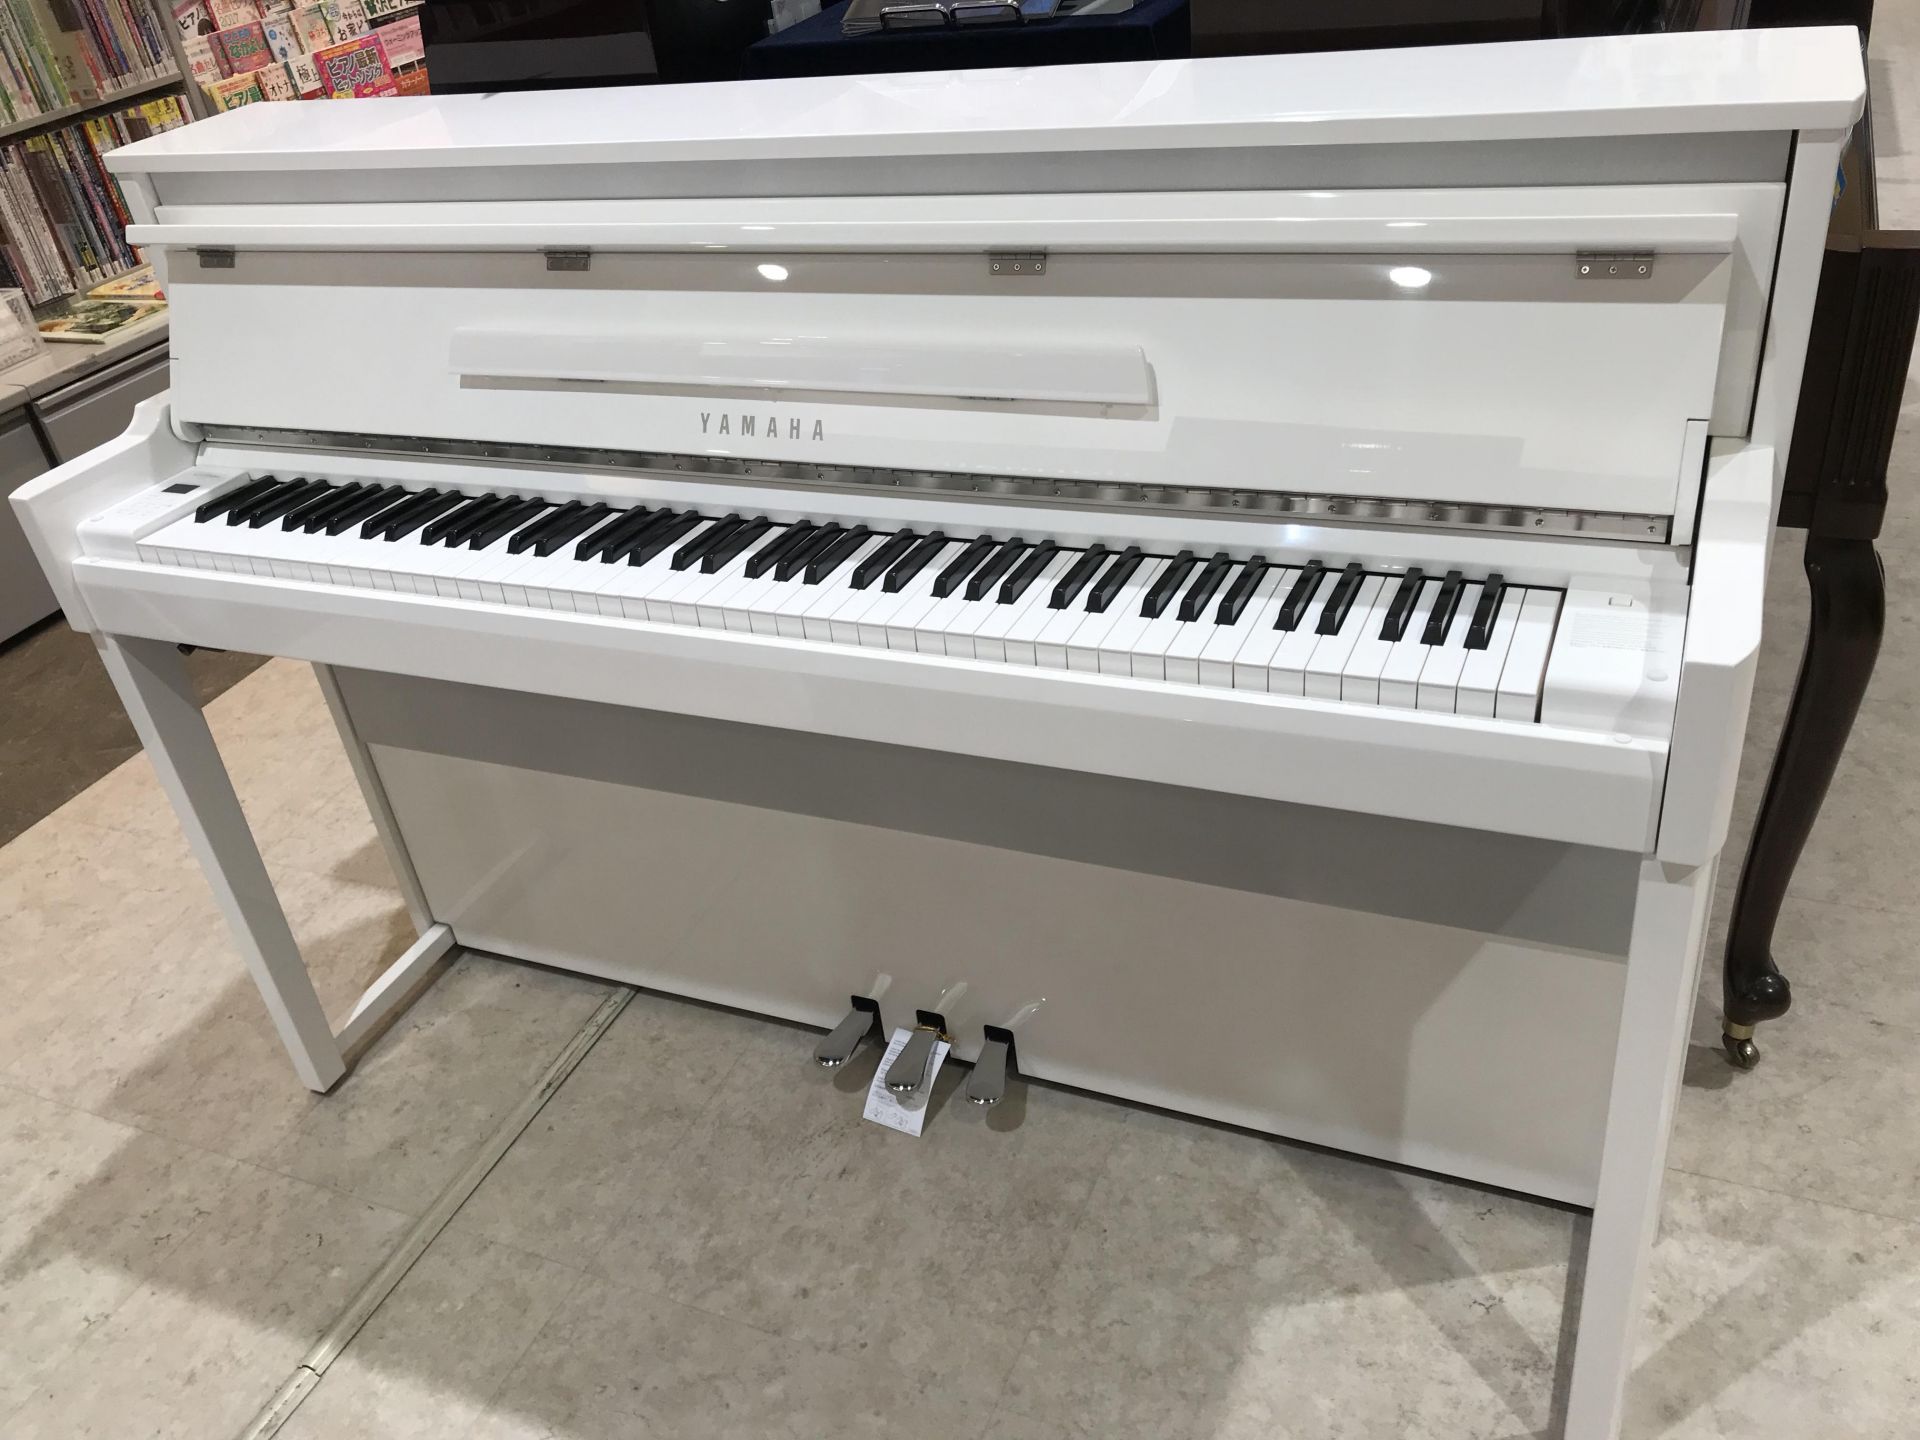 今大人気の、ハイブリットピアノ"YAMAHA　NU1X"が店頭に入荷しました！ ※店頭展示品は白になります。 アコースティックのアップライトピアノと同様のアクション機構と木製鍵盤を、最新の音源や精巧なセンサー、音響技術と組み合わせることで、グランドピアノさながらの演奏感と、豊かな表現力を実現したモデ […]